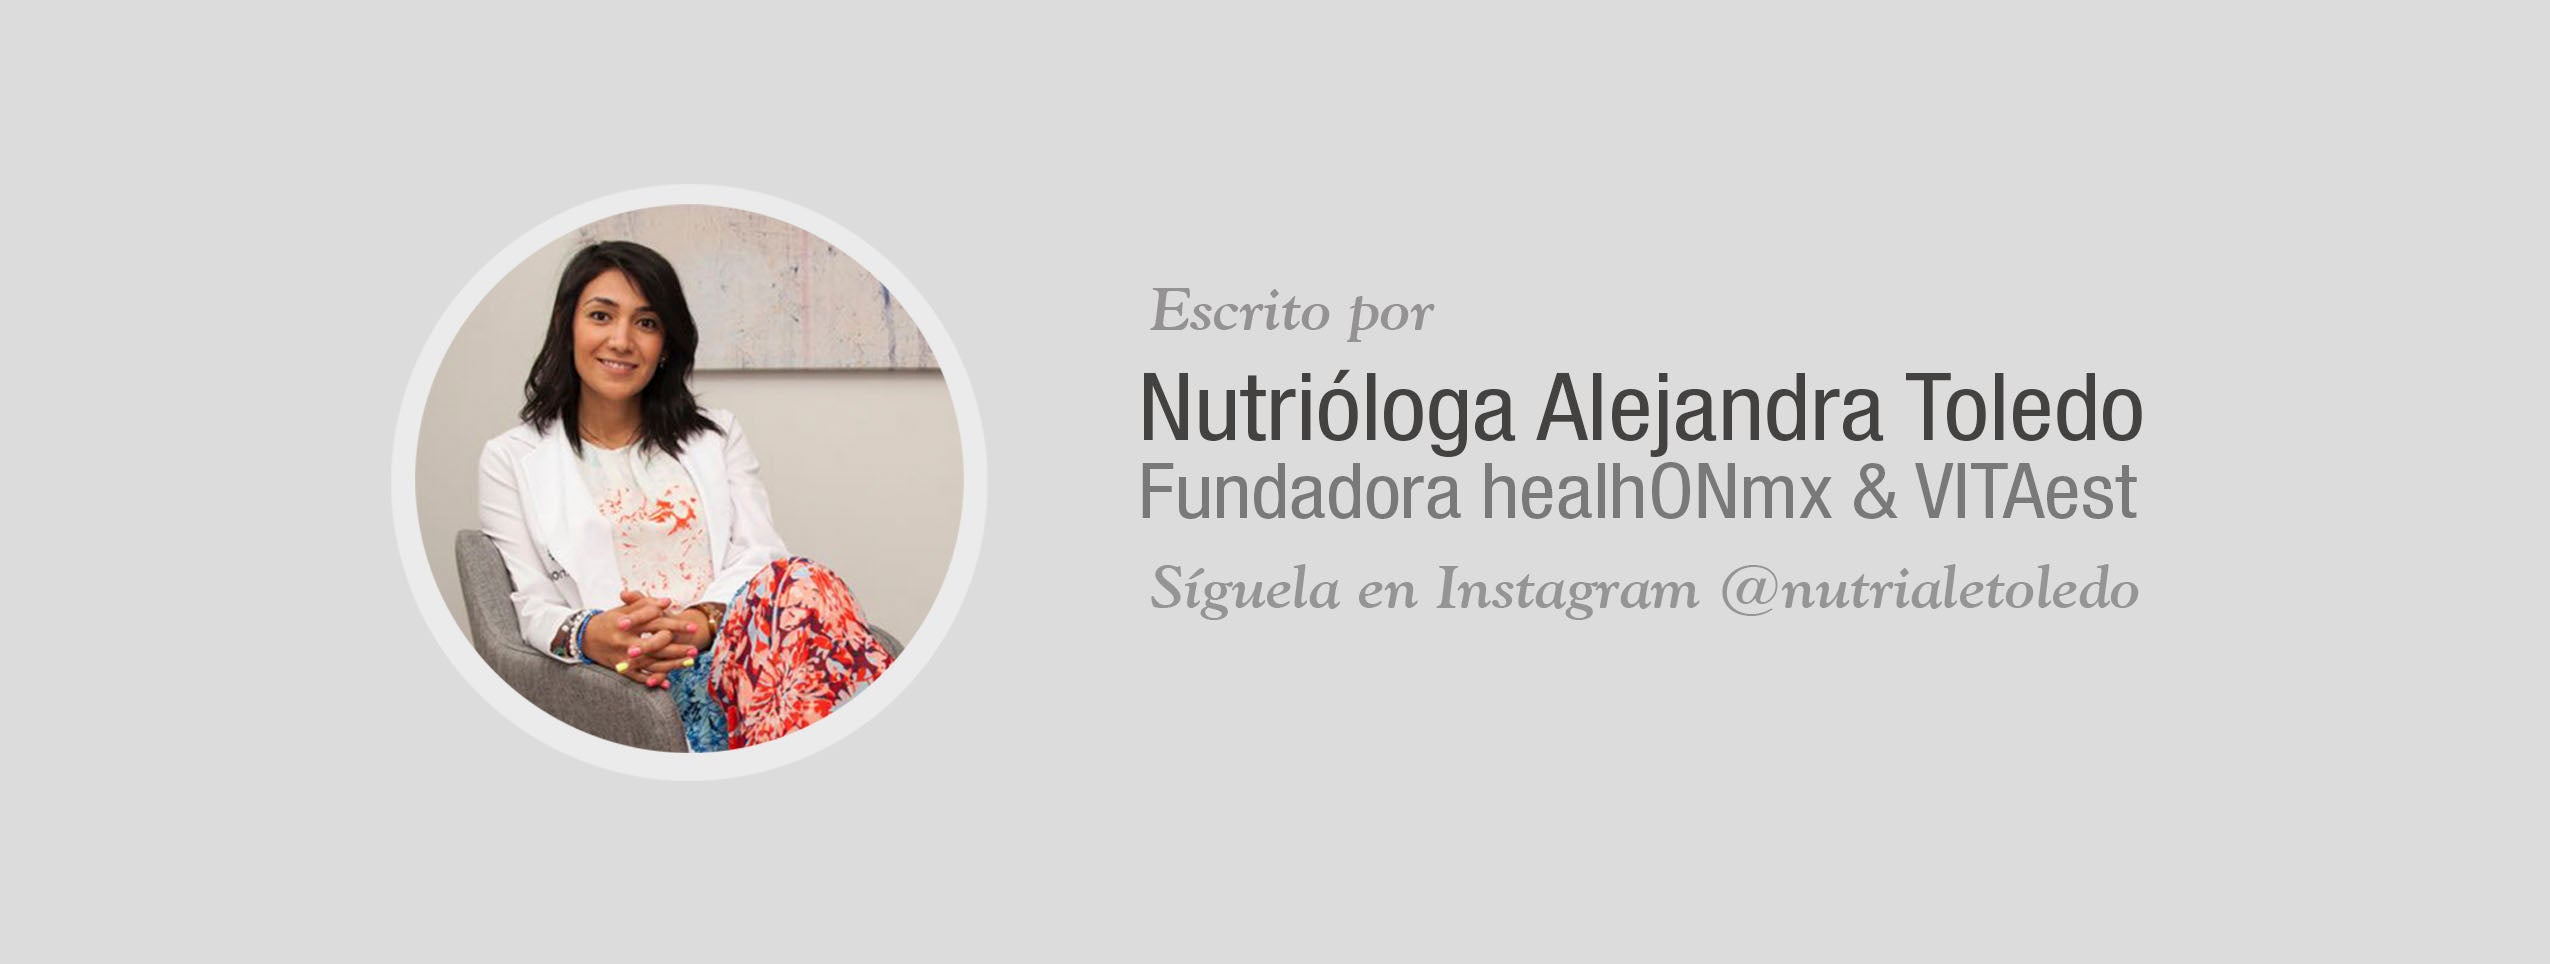 Nutriologa Alejandra Toledo